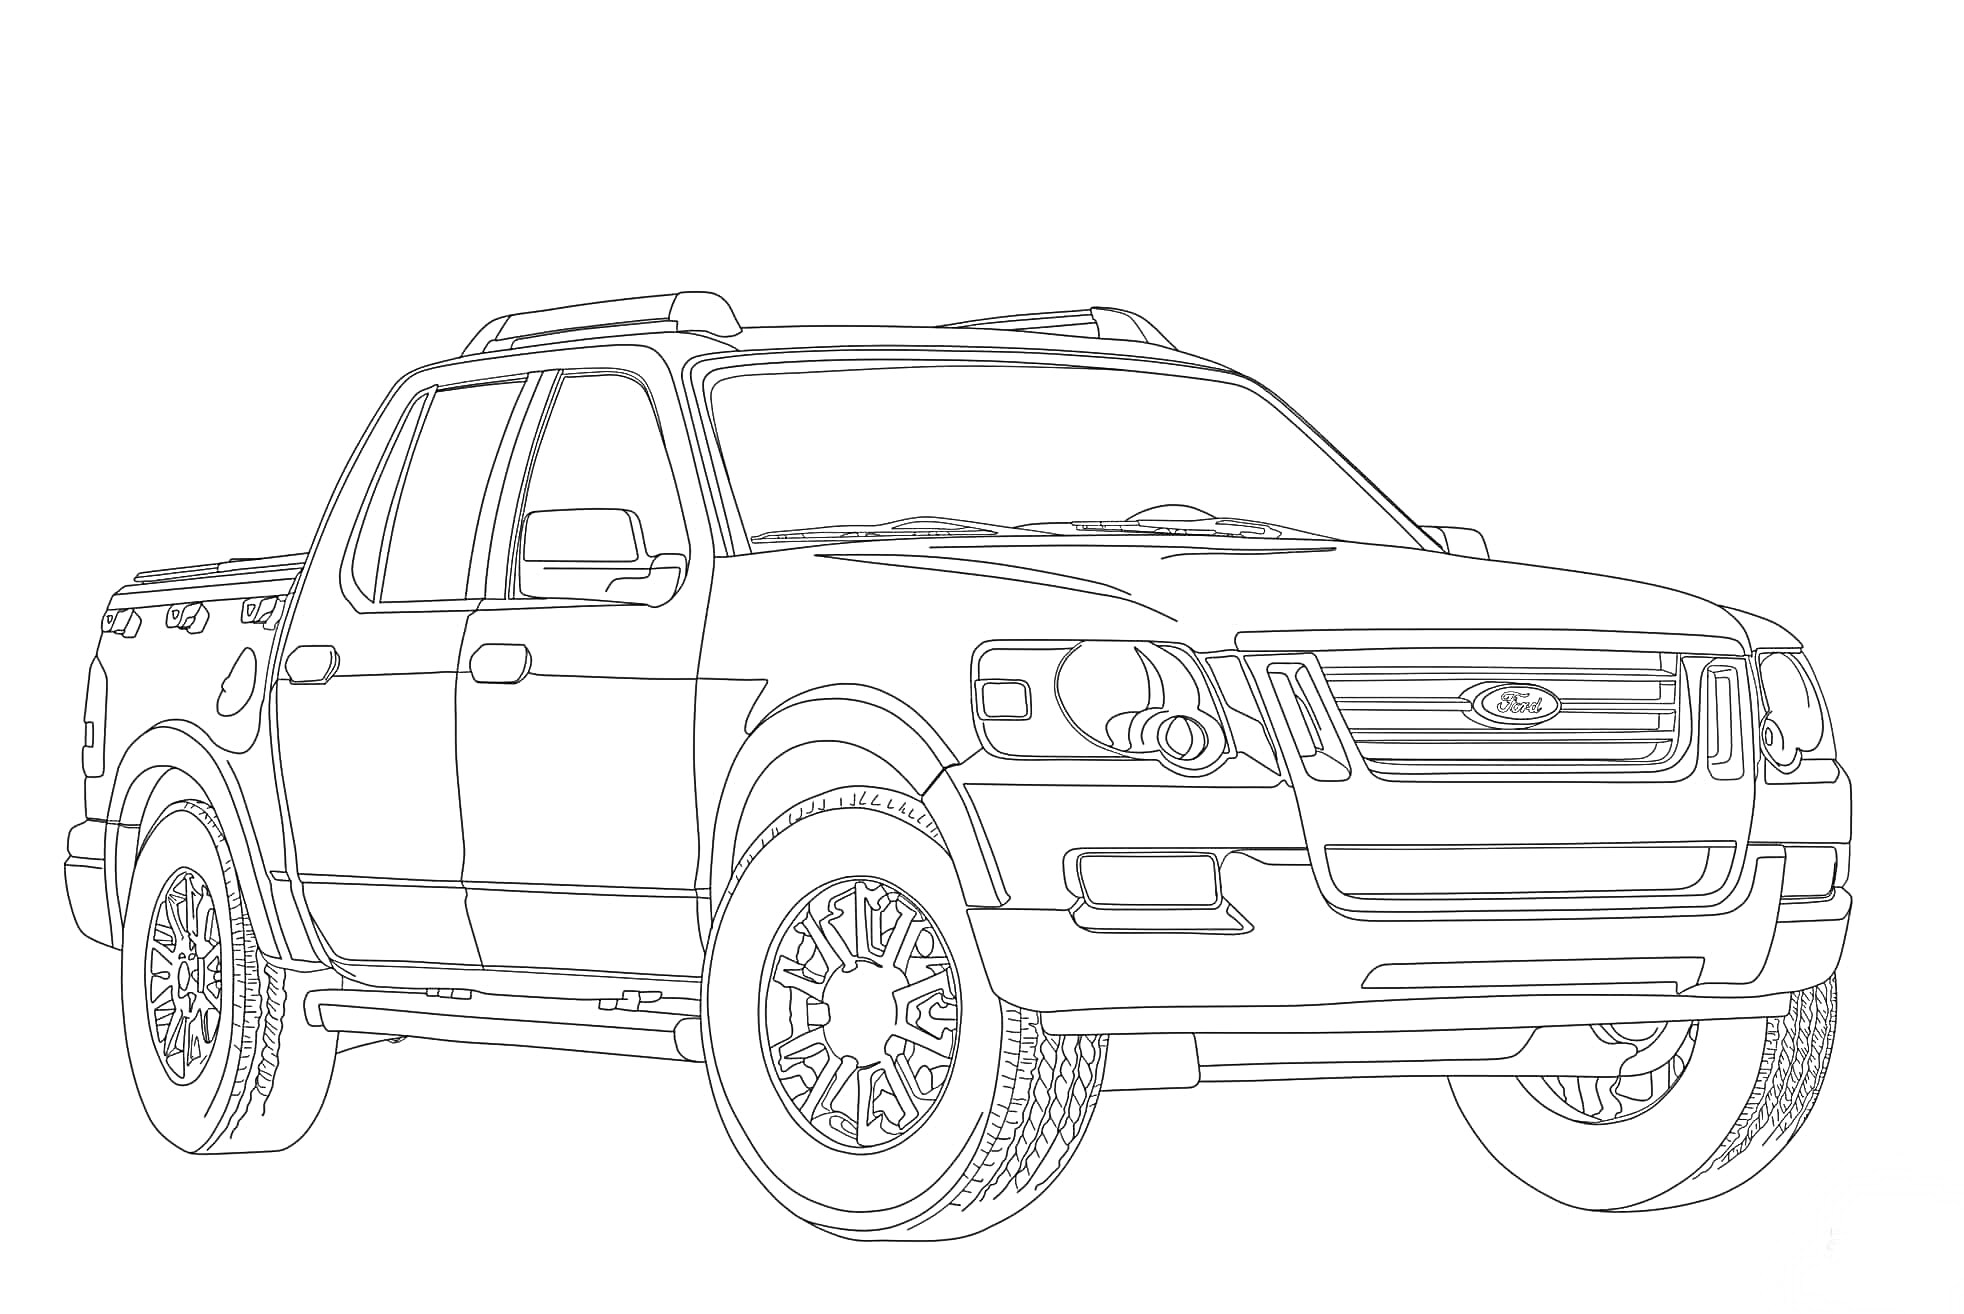 Линия для раскраски пикапа Ford с детализированными колесами и передними фарами